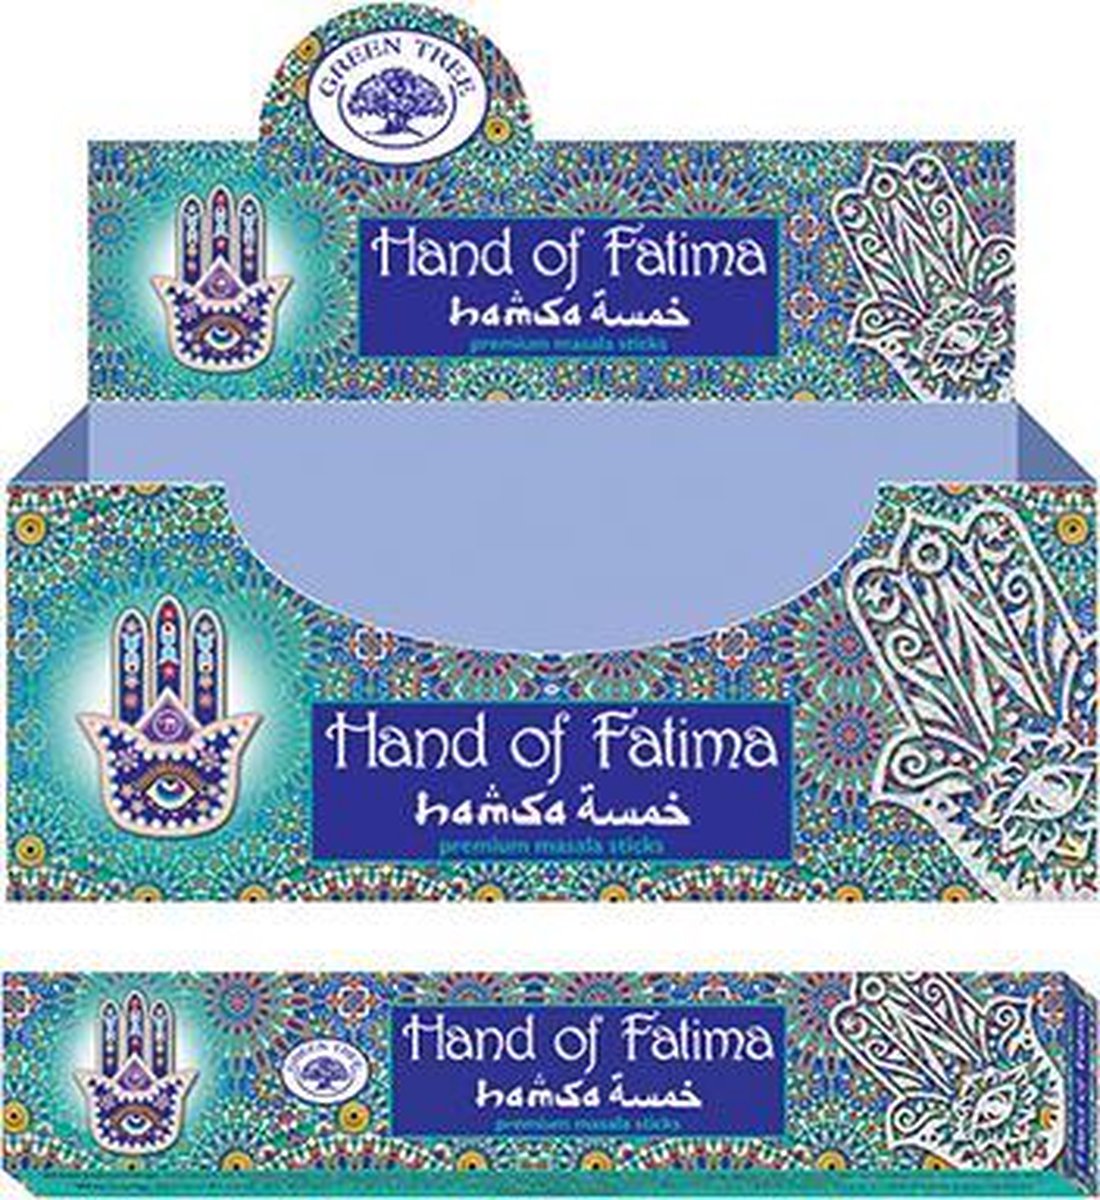 Hand of Fatima - Green Tree masala wierookstokjes